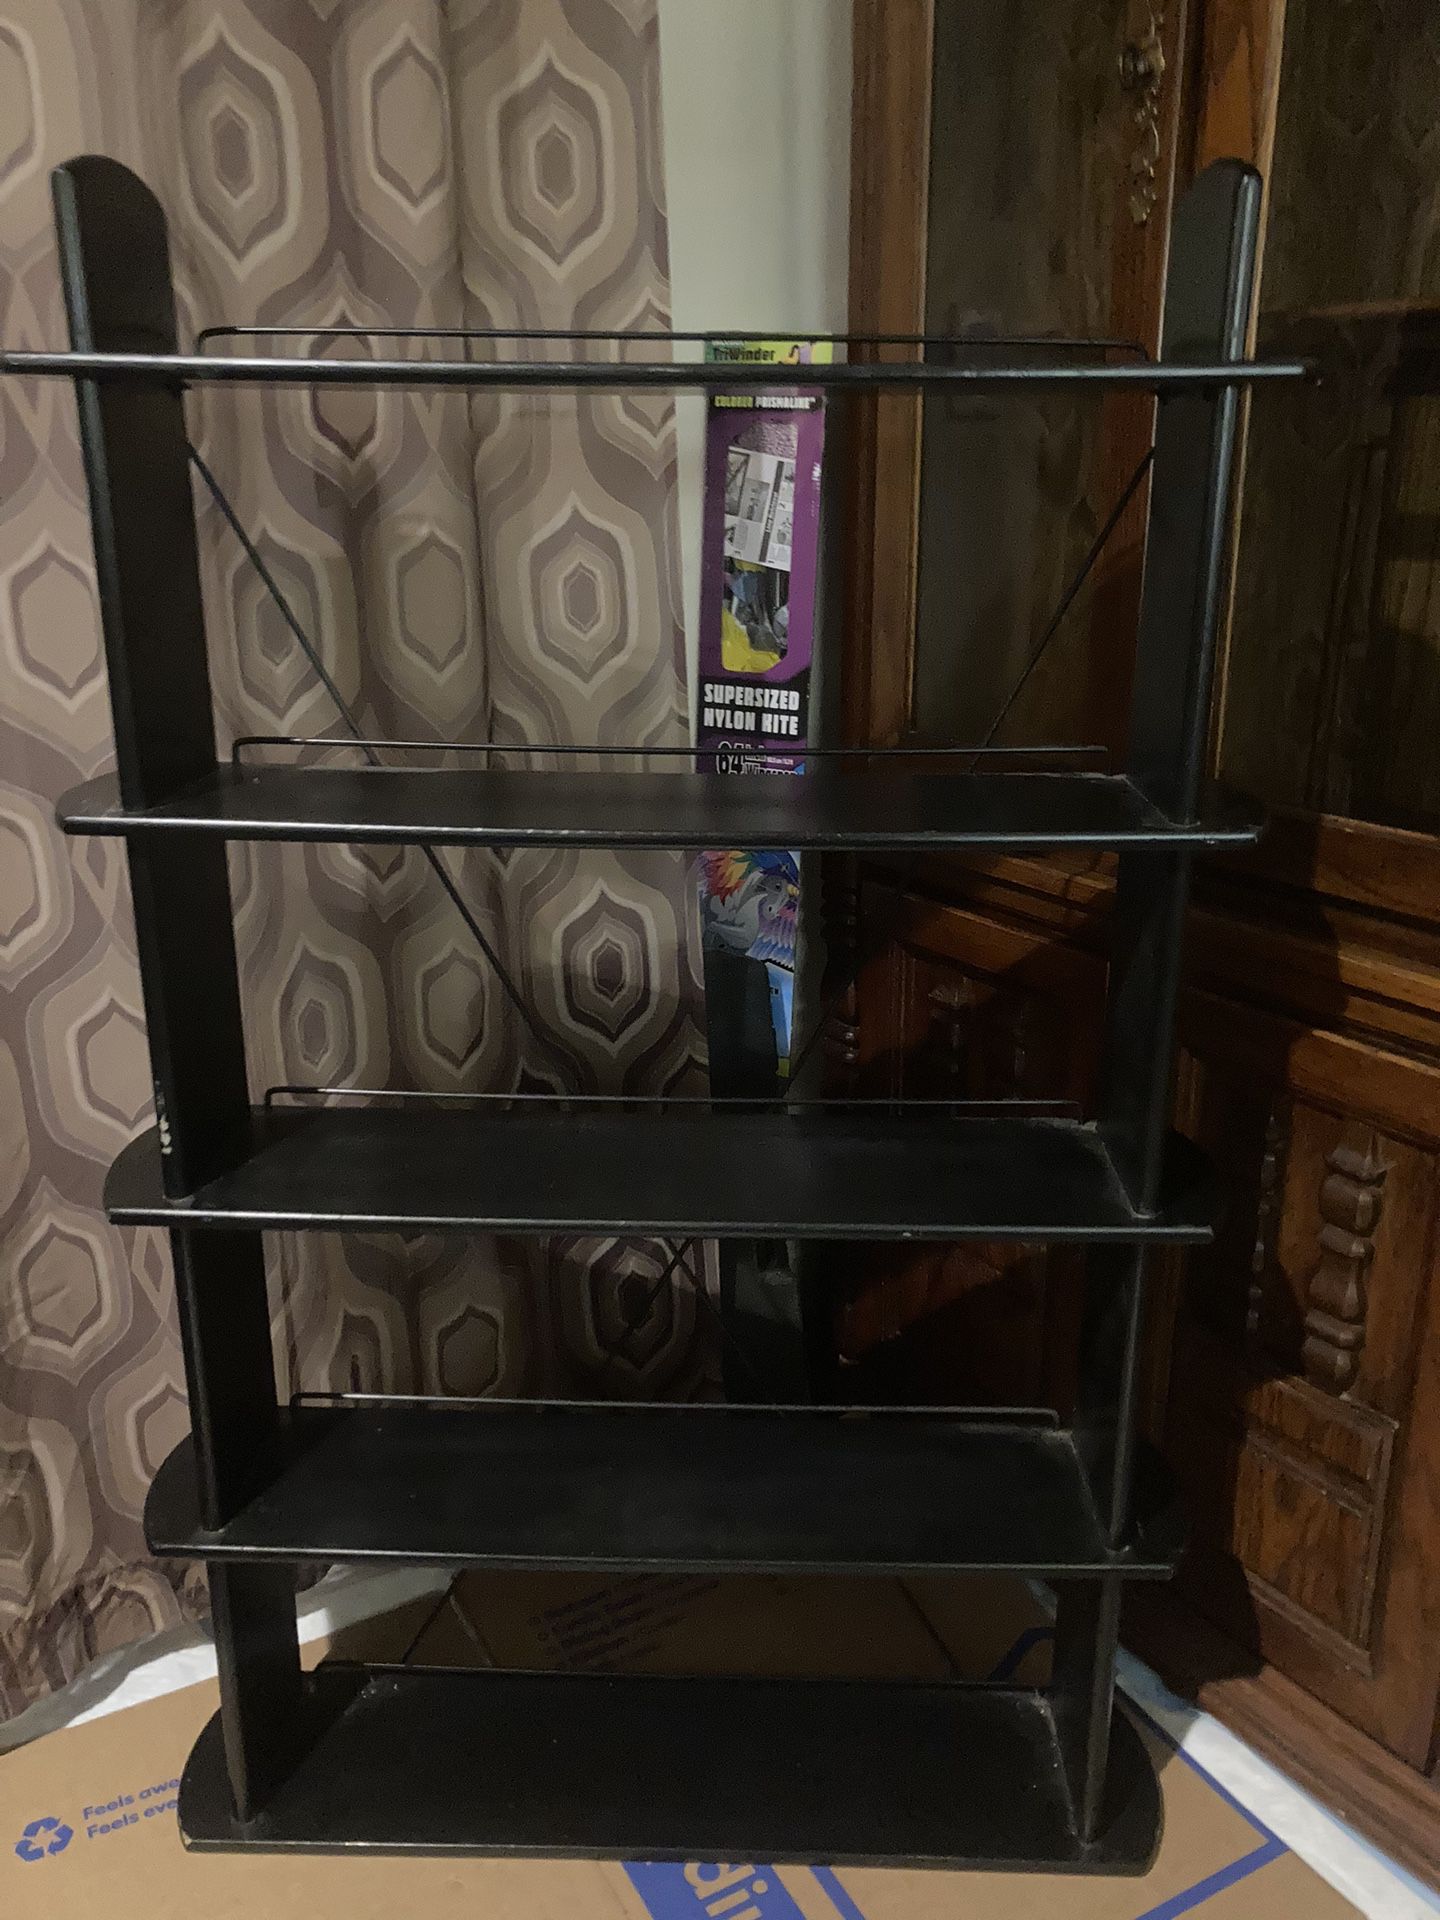 Media Shelf 5 Shelves  45” high DVD/CD/Book